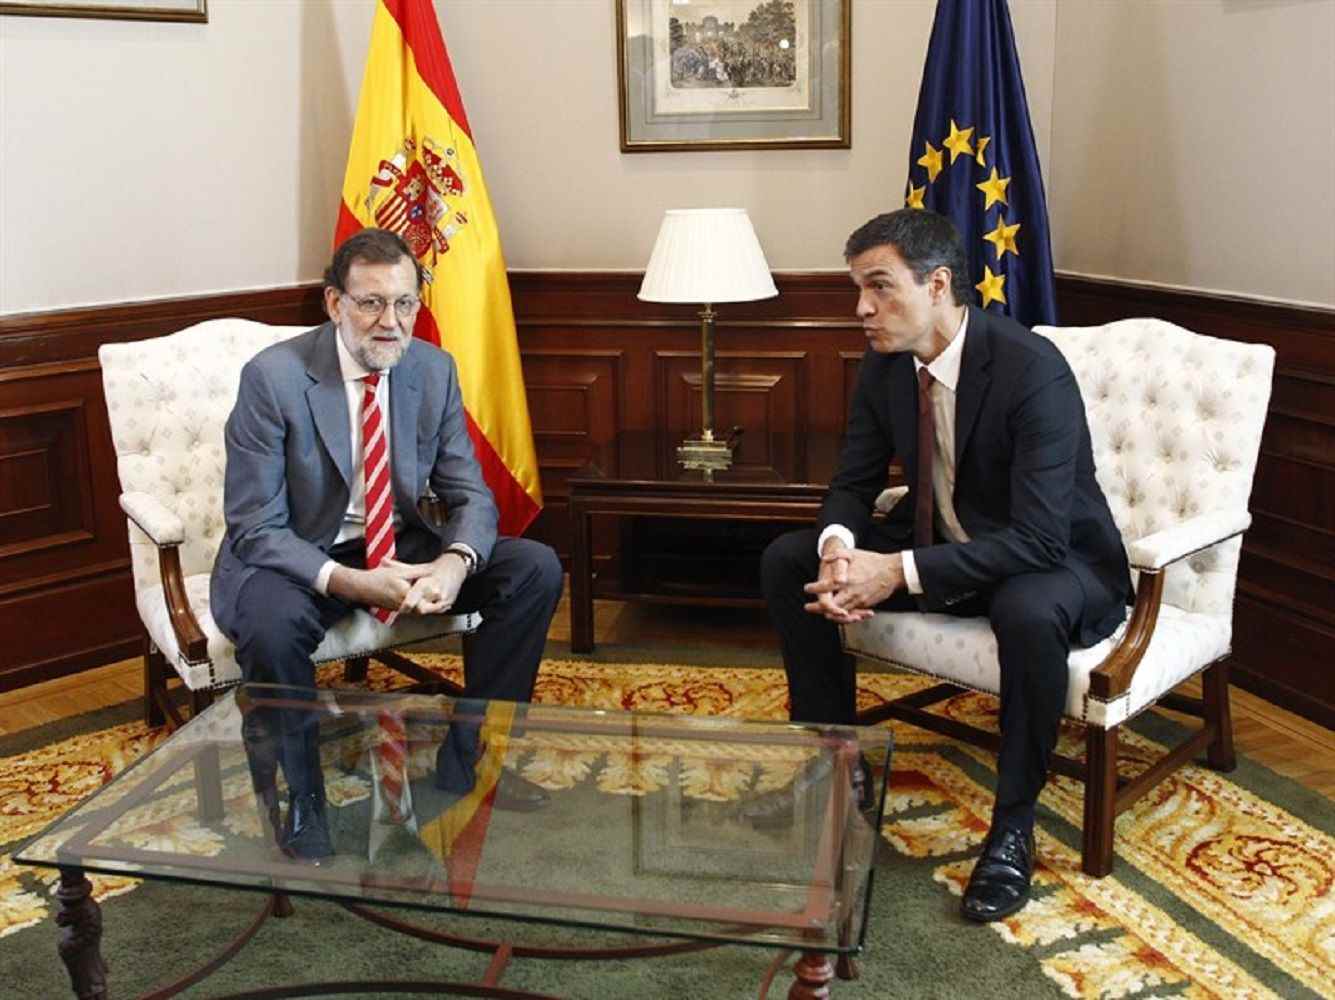 Pedro Sánchez puja i Mariano Rajoy cau: menys de 4 punts de diferència